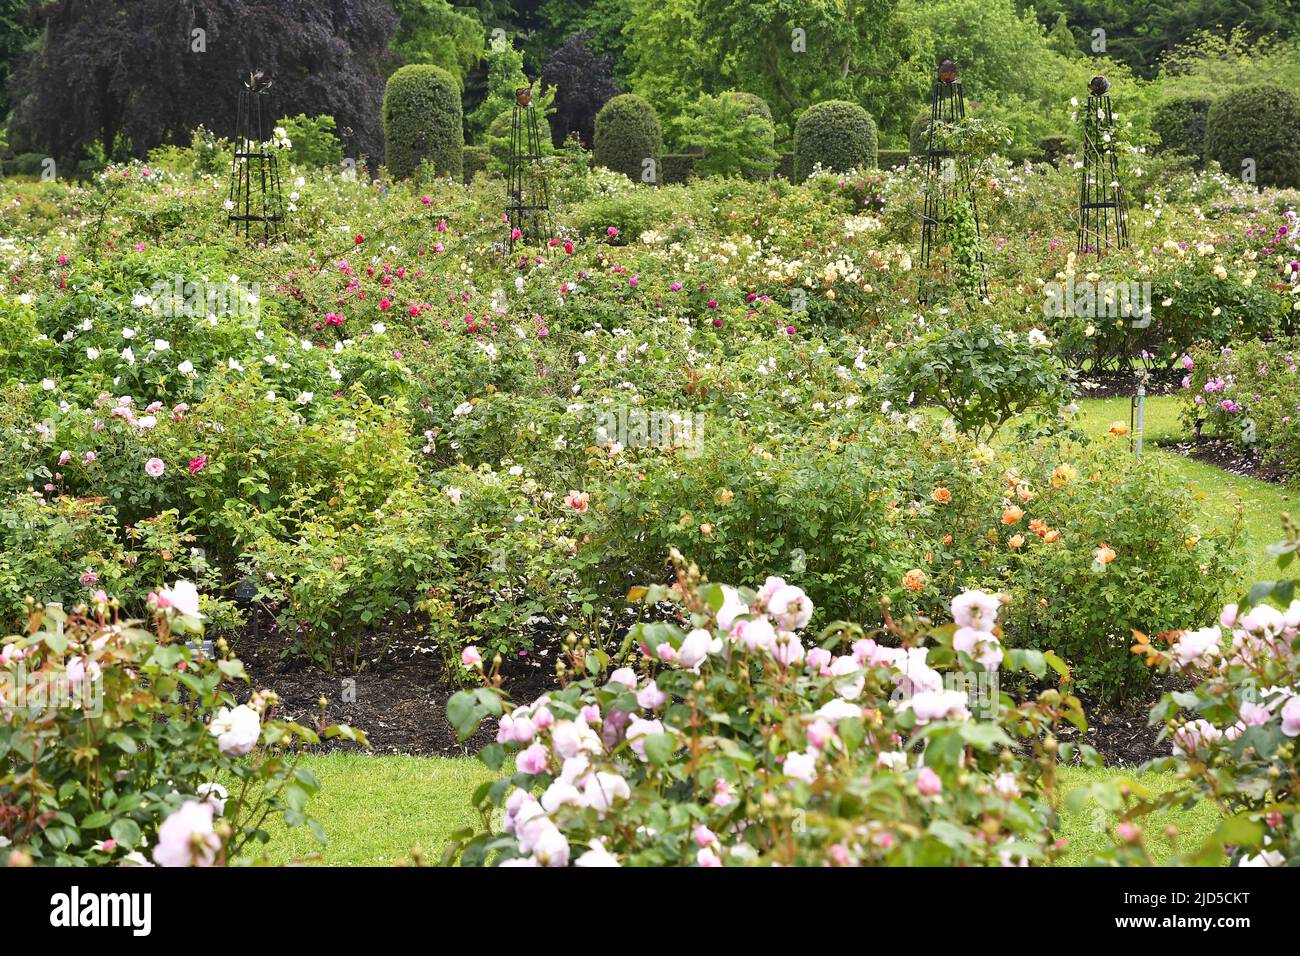 Rose garden in spring, Royal Botanic Gardens Kew London UK. Stock Photo